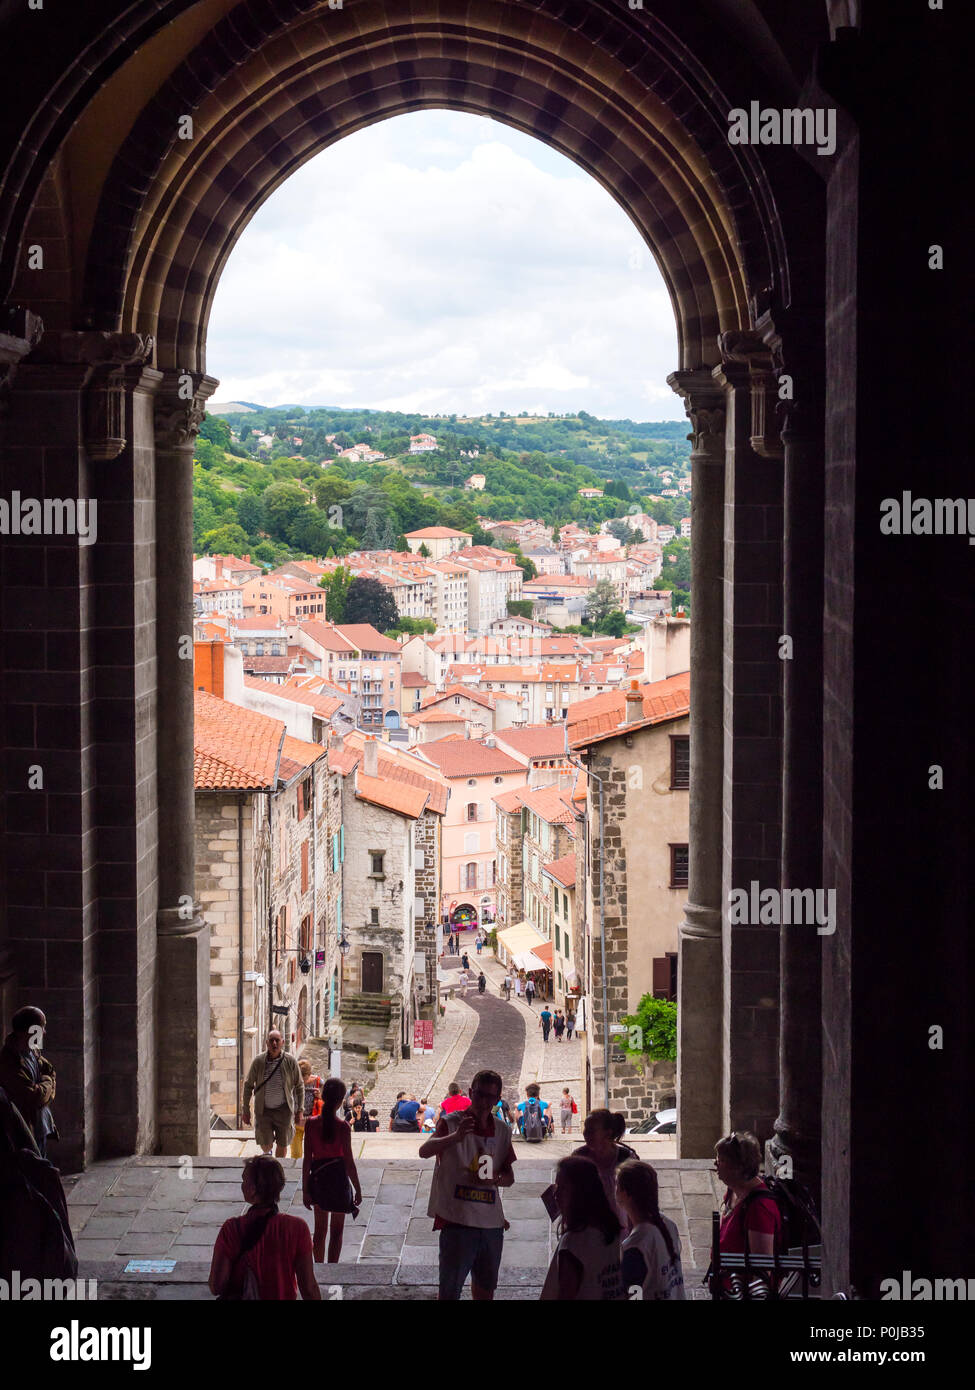 Mit Blick auf die gepflasterte Straße von der Kathedrale Notre Dame Le Puy-en-Velay Haute-Loire Auvergne-Rh ône-Alpes Frankreich Stockfoto